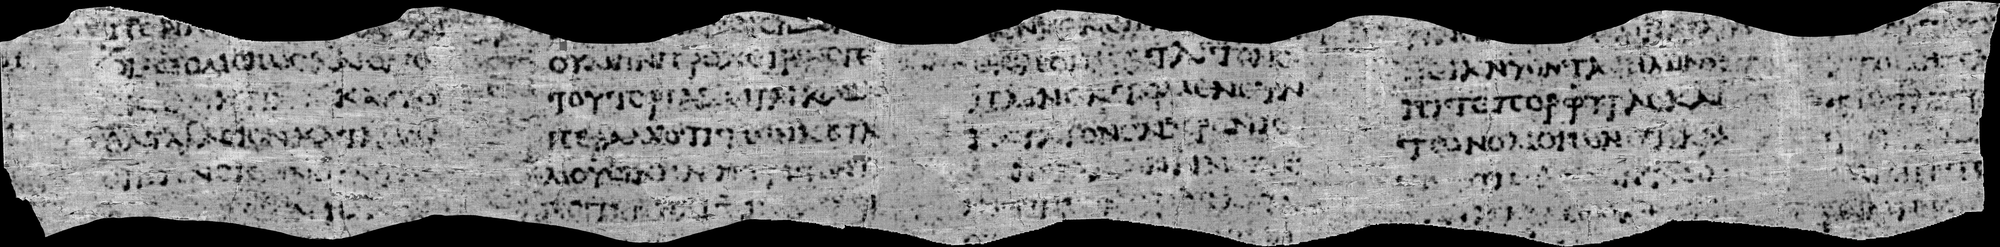 Mehr als vier Kolumnen, die jeweils über sechs Zeilen laufen – das ist der bislang größte Textausschnitt, den Teilnehmende der »Vesuvius Challenge« aus den CT-Scans einer rund 2000 Jahre alten Schriftrolle gewinnen konnten.